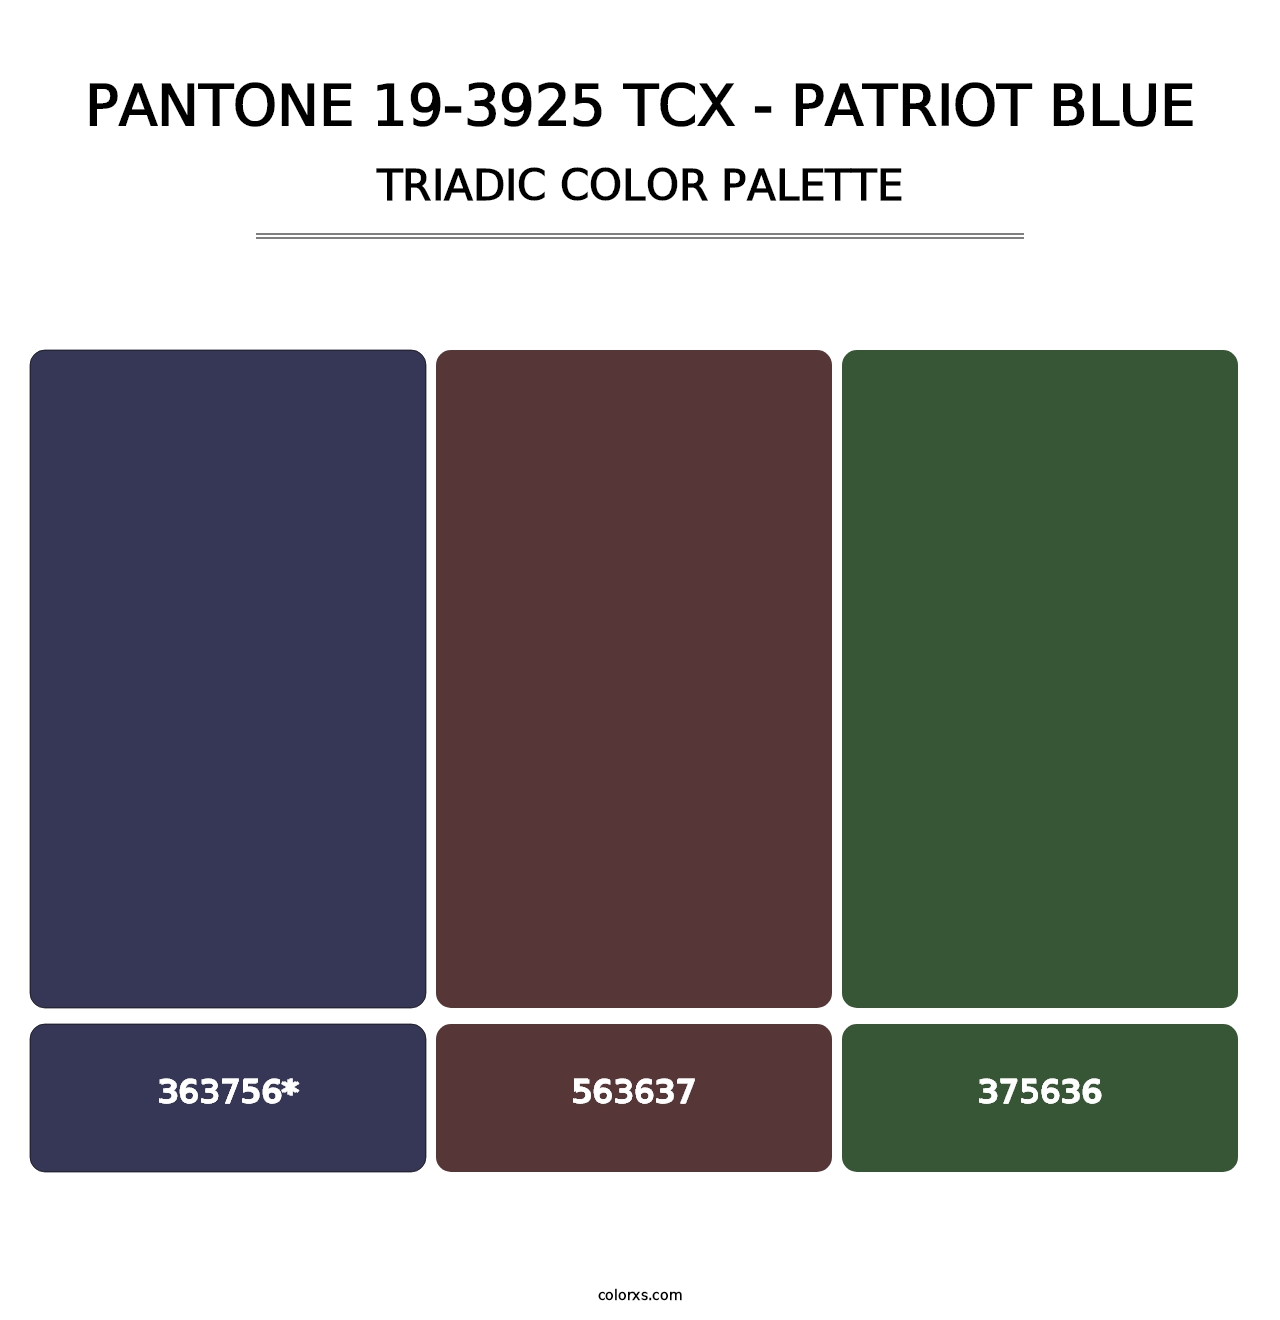 PANTONE 19-3925 TCX - Patriot Blue - Triadic Color Palette